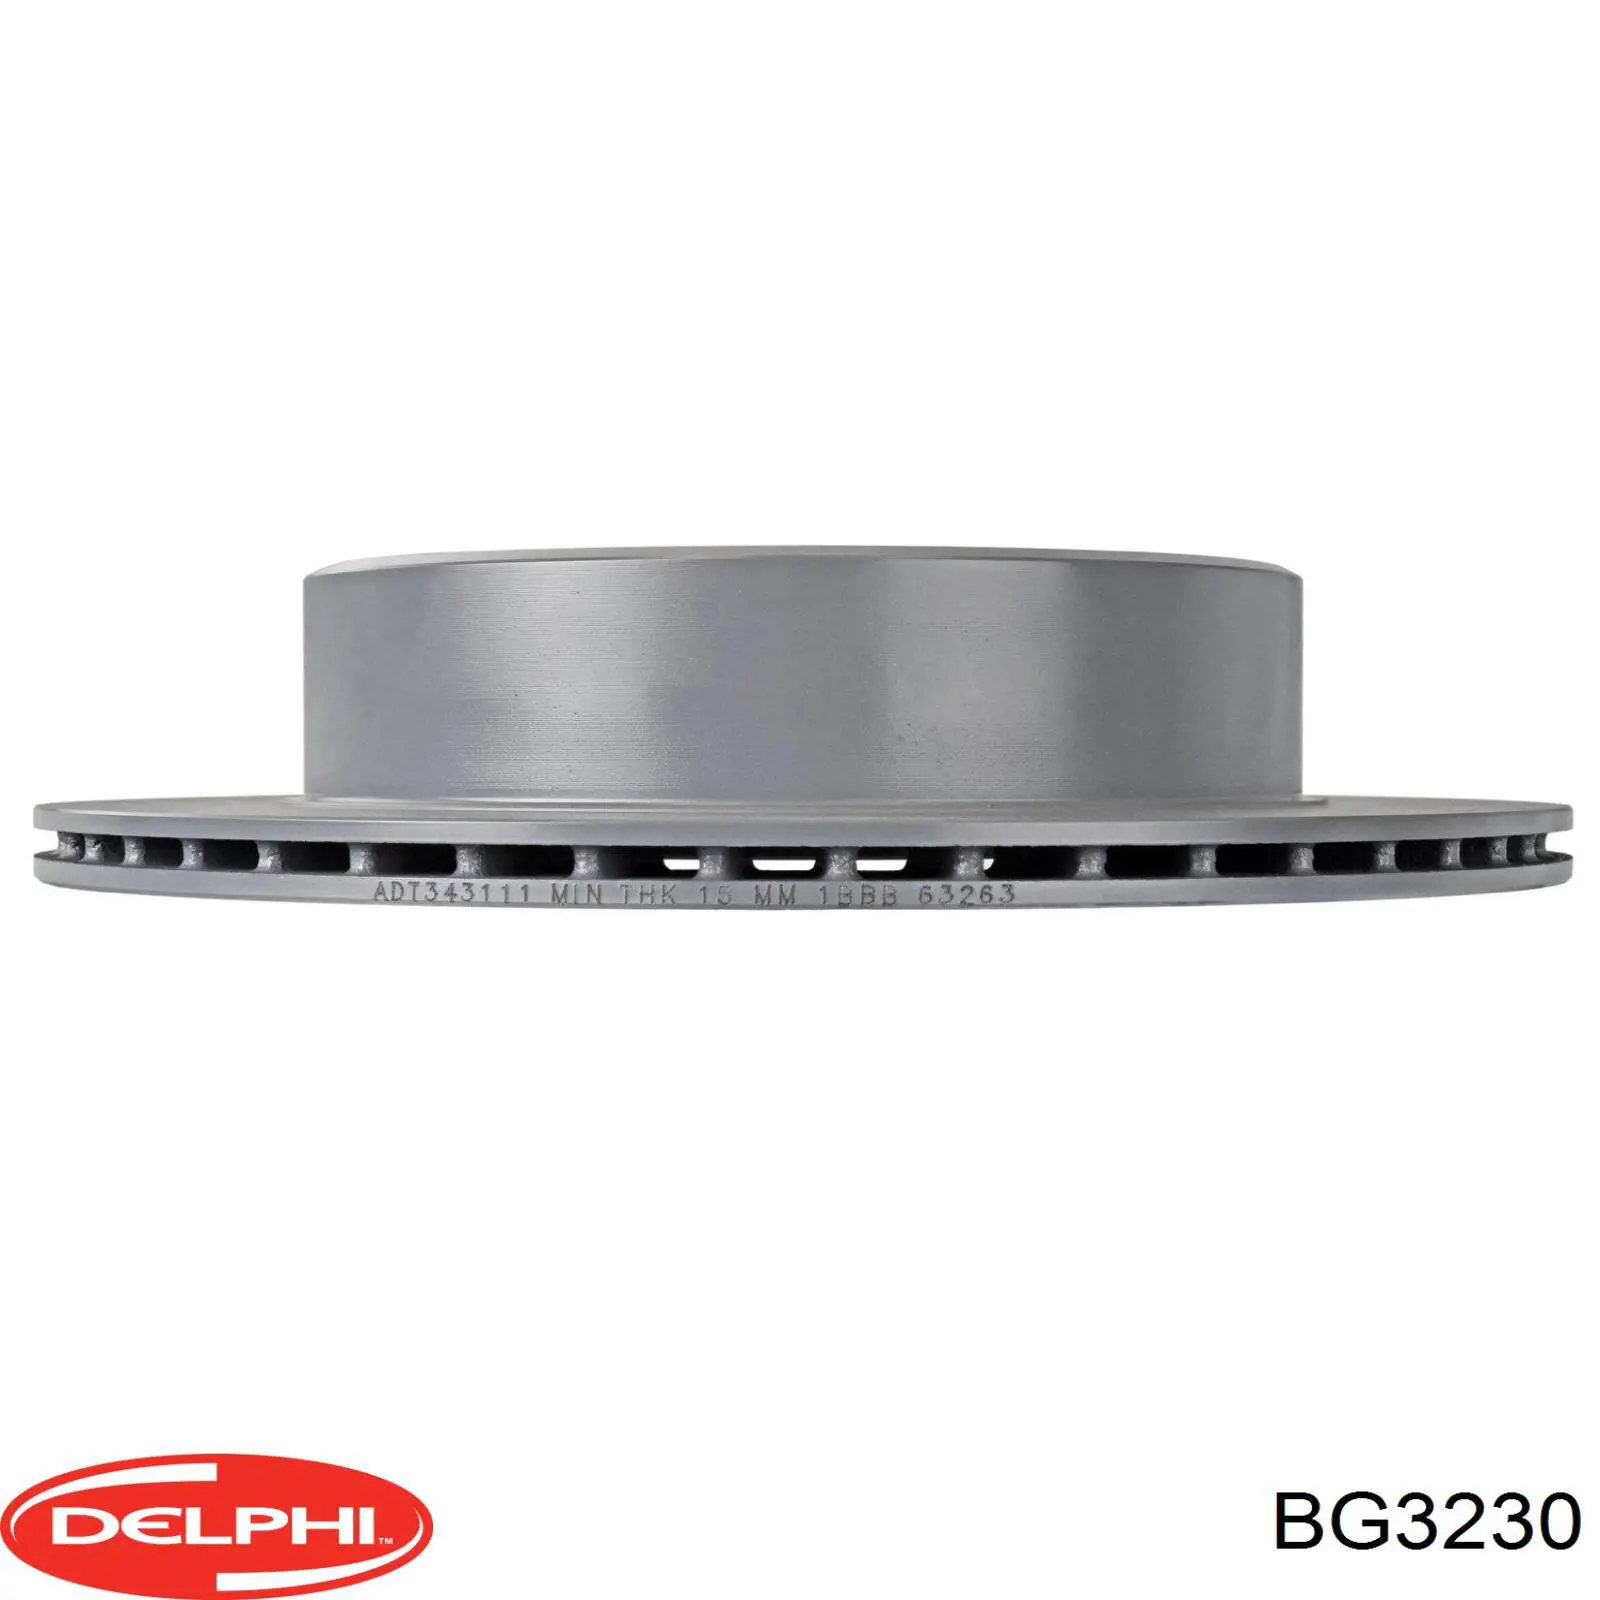 BG3230 Delphi disco de freno trasero